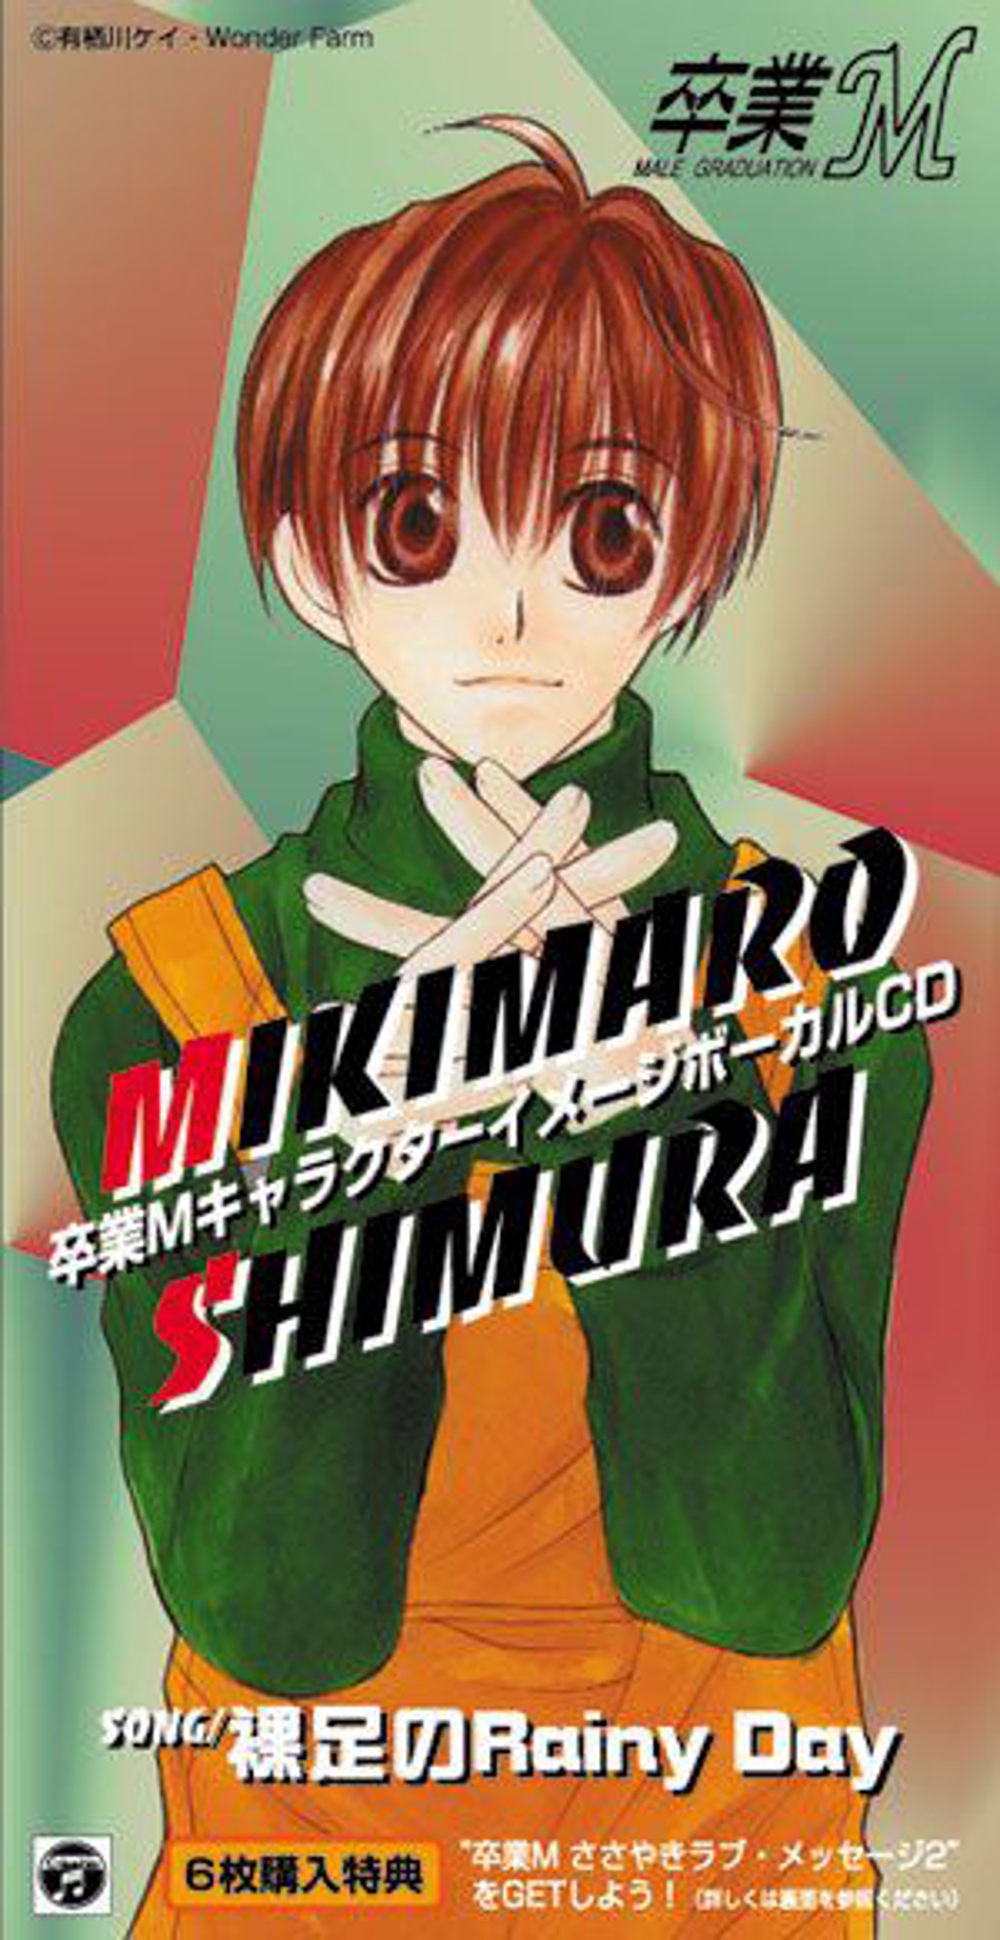 「卒業M」MIKIMARO SHIMURA